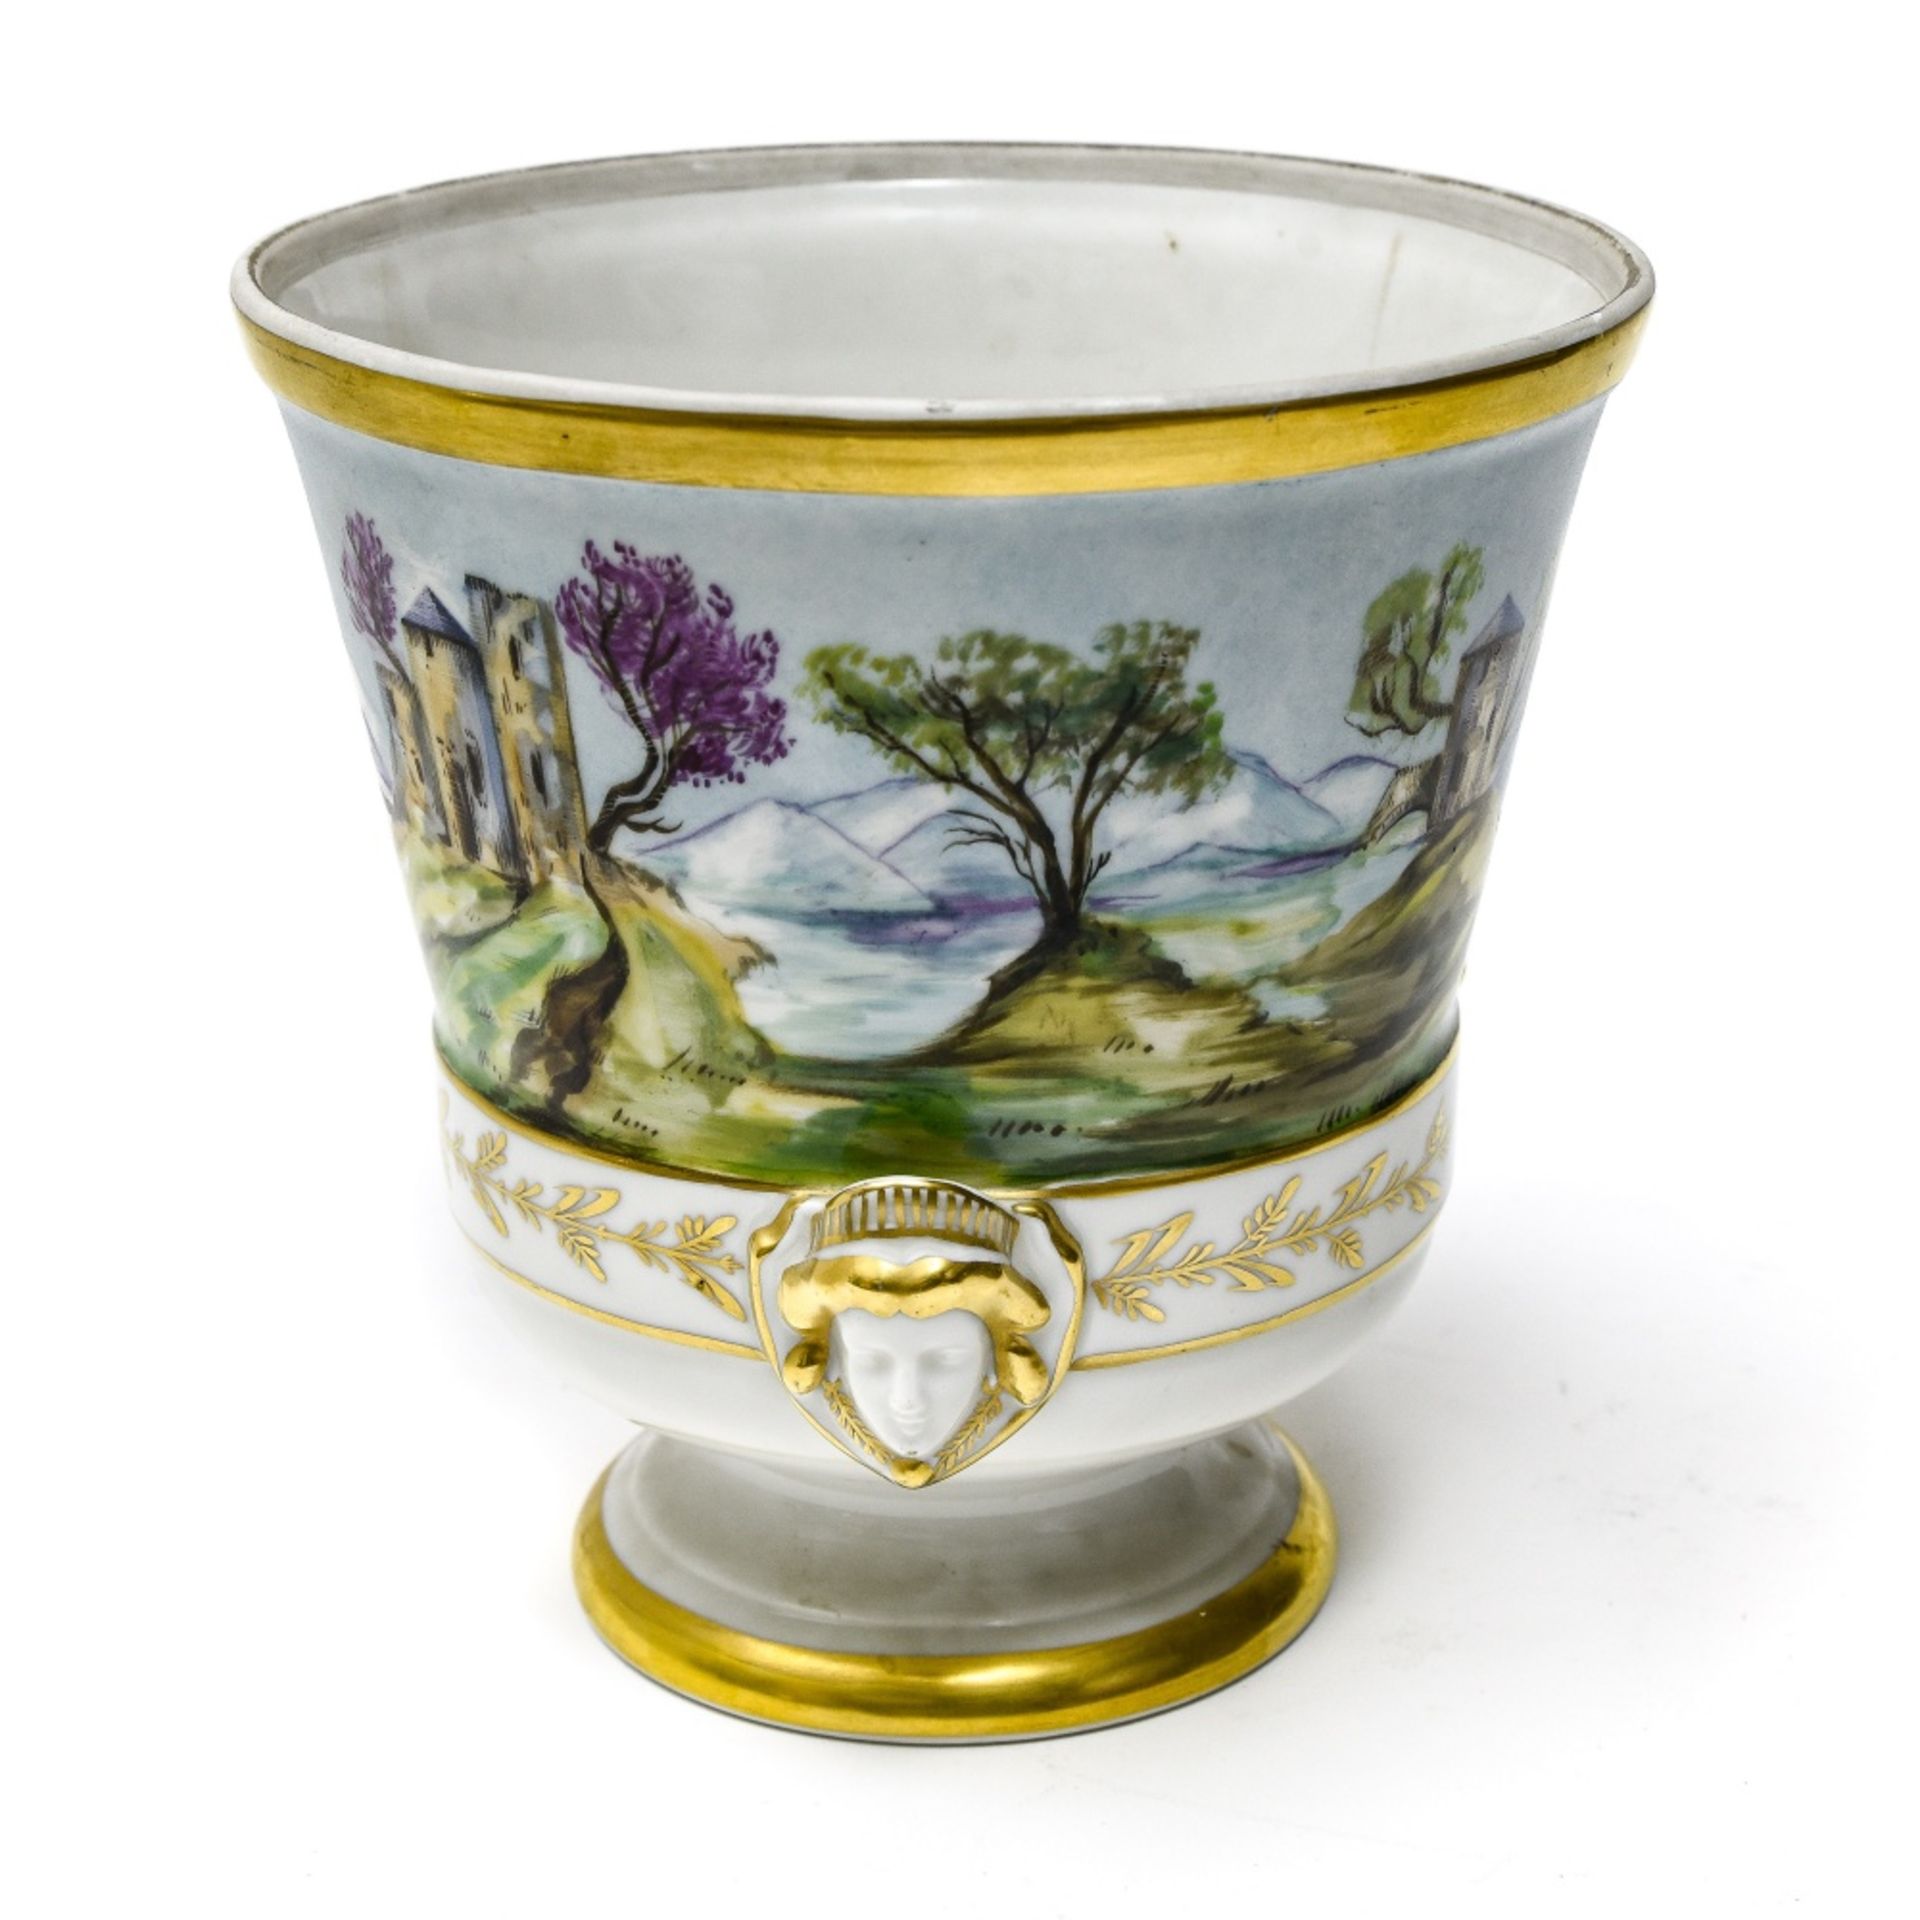 Paris, 19th century Ice bucket, Porcelain with polychrome enamel dŽcor of mountainous landscape, - Image 2 of 2